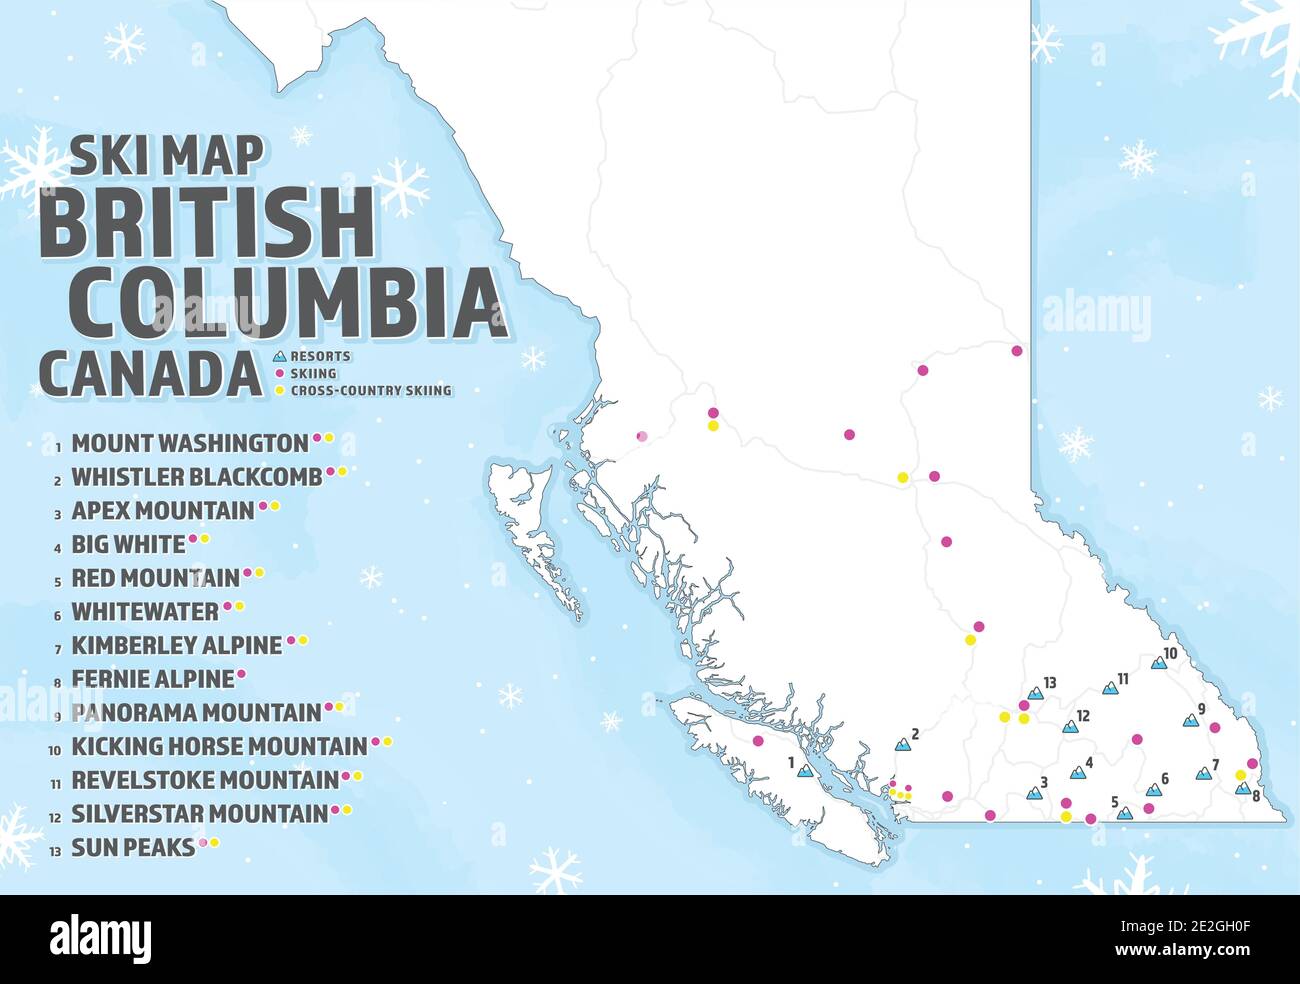 Skikarte von British Columbia, Kanada. BC-Karte mit Symbolen für Skigebiete, Ski- und Langlauforte. Winter Tourist Ski Guide oder Informationen. Stock Vektor